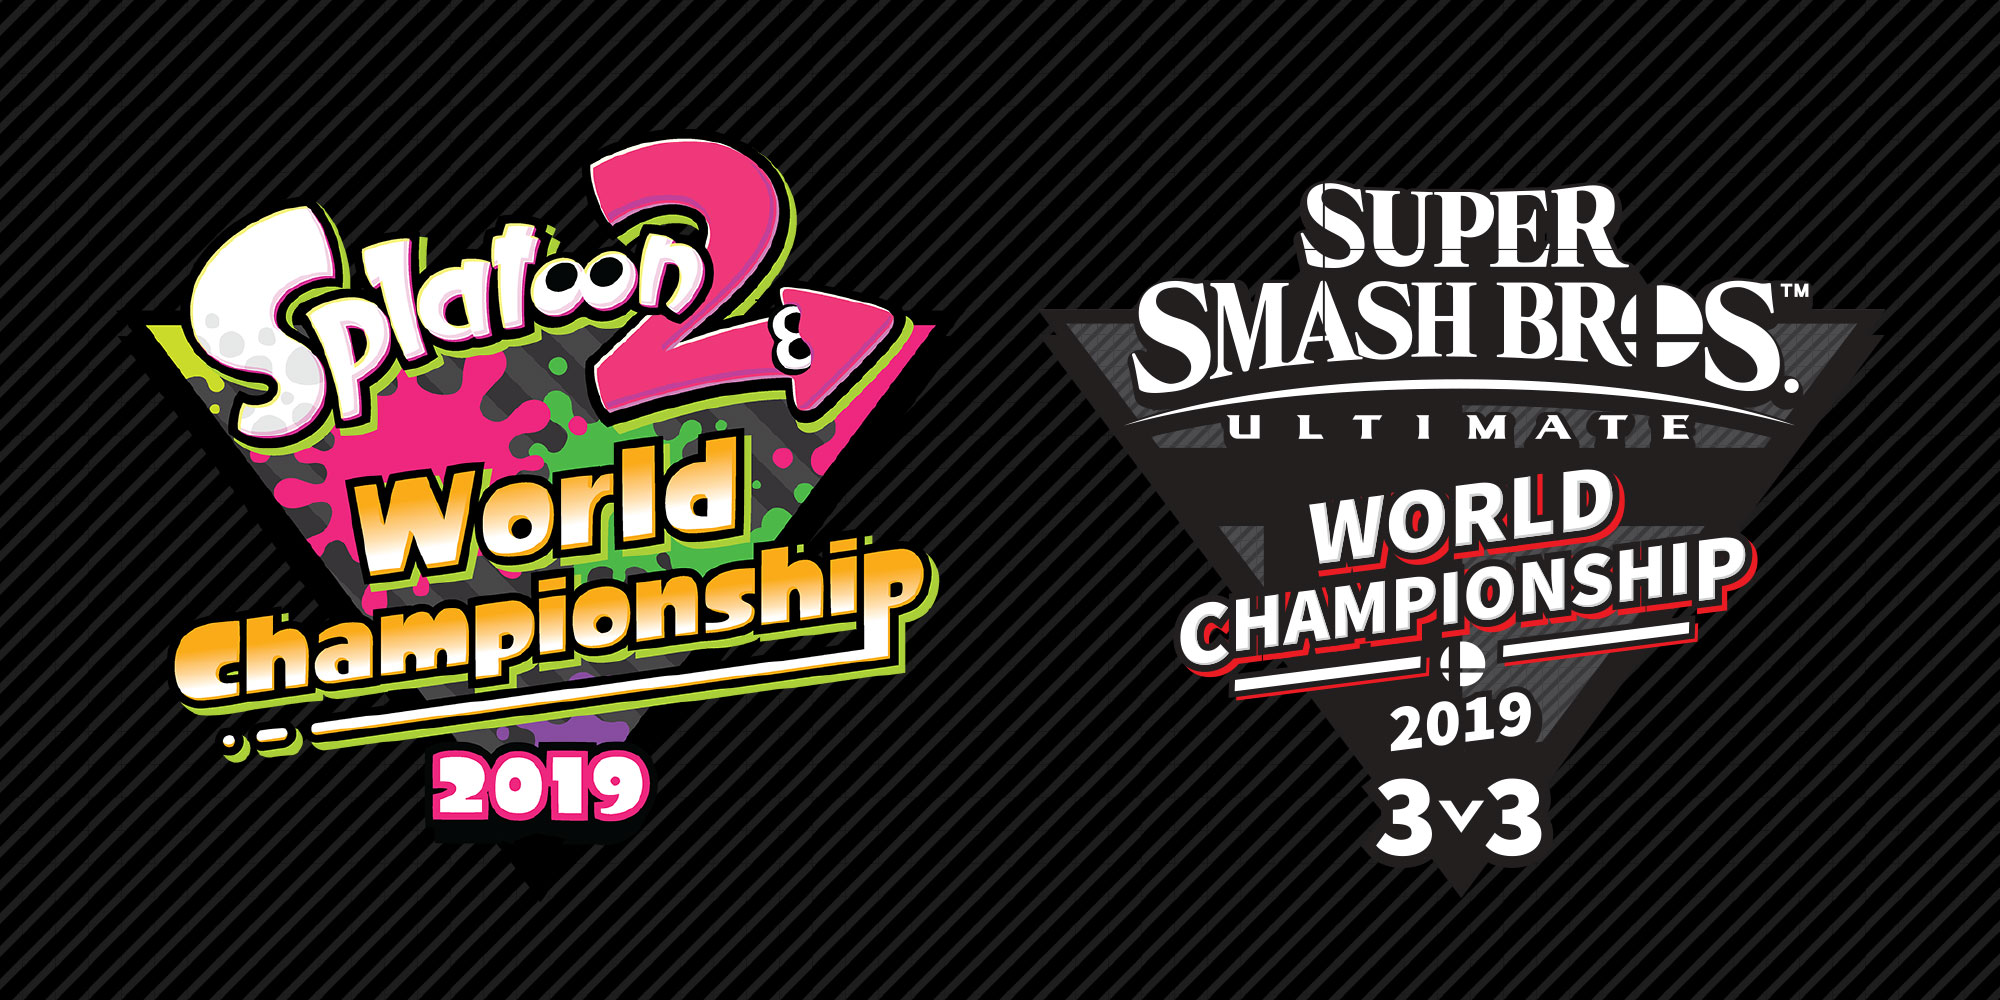 Wereldkampioenen Splatoon 2 en Super Smash Bros. Ultimate gekroond tijdens E3 2019!